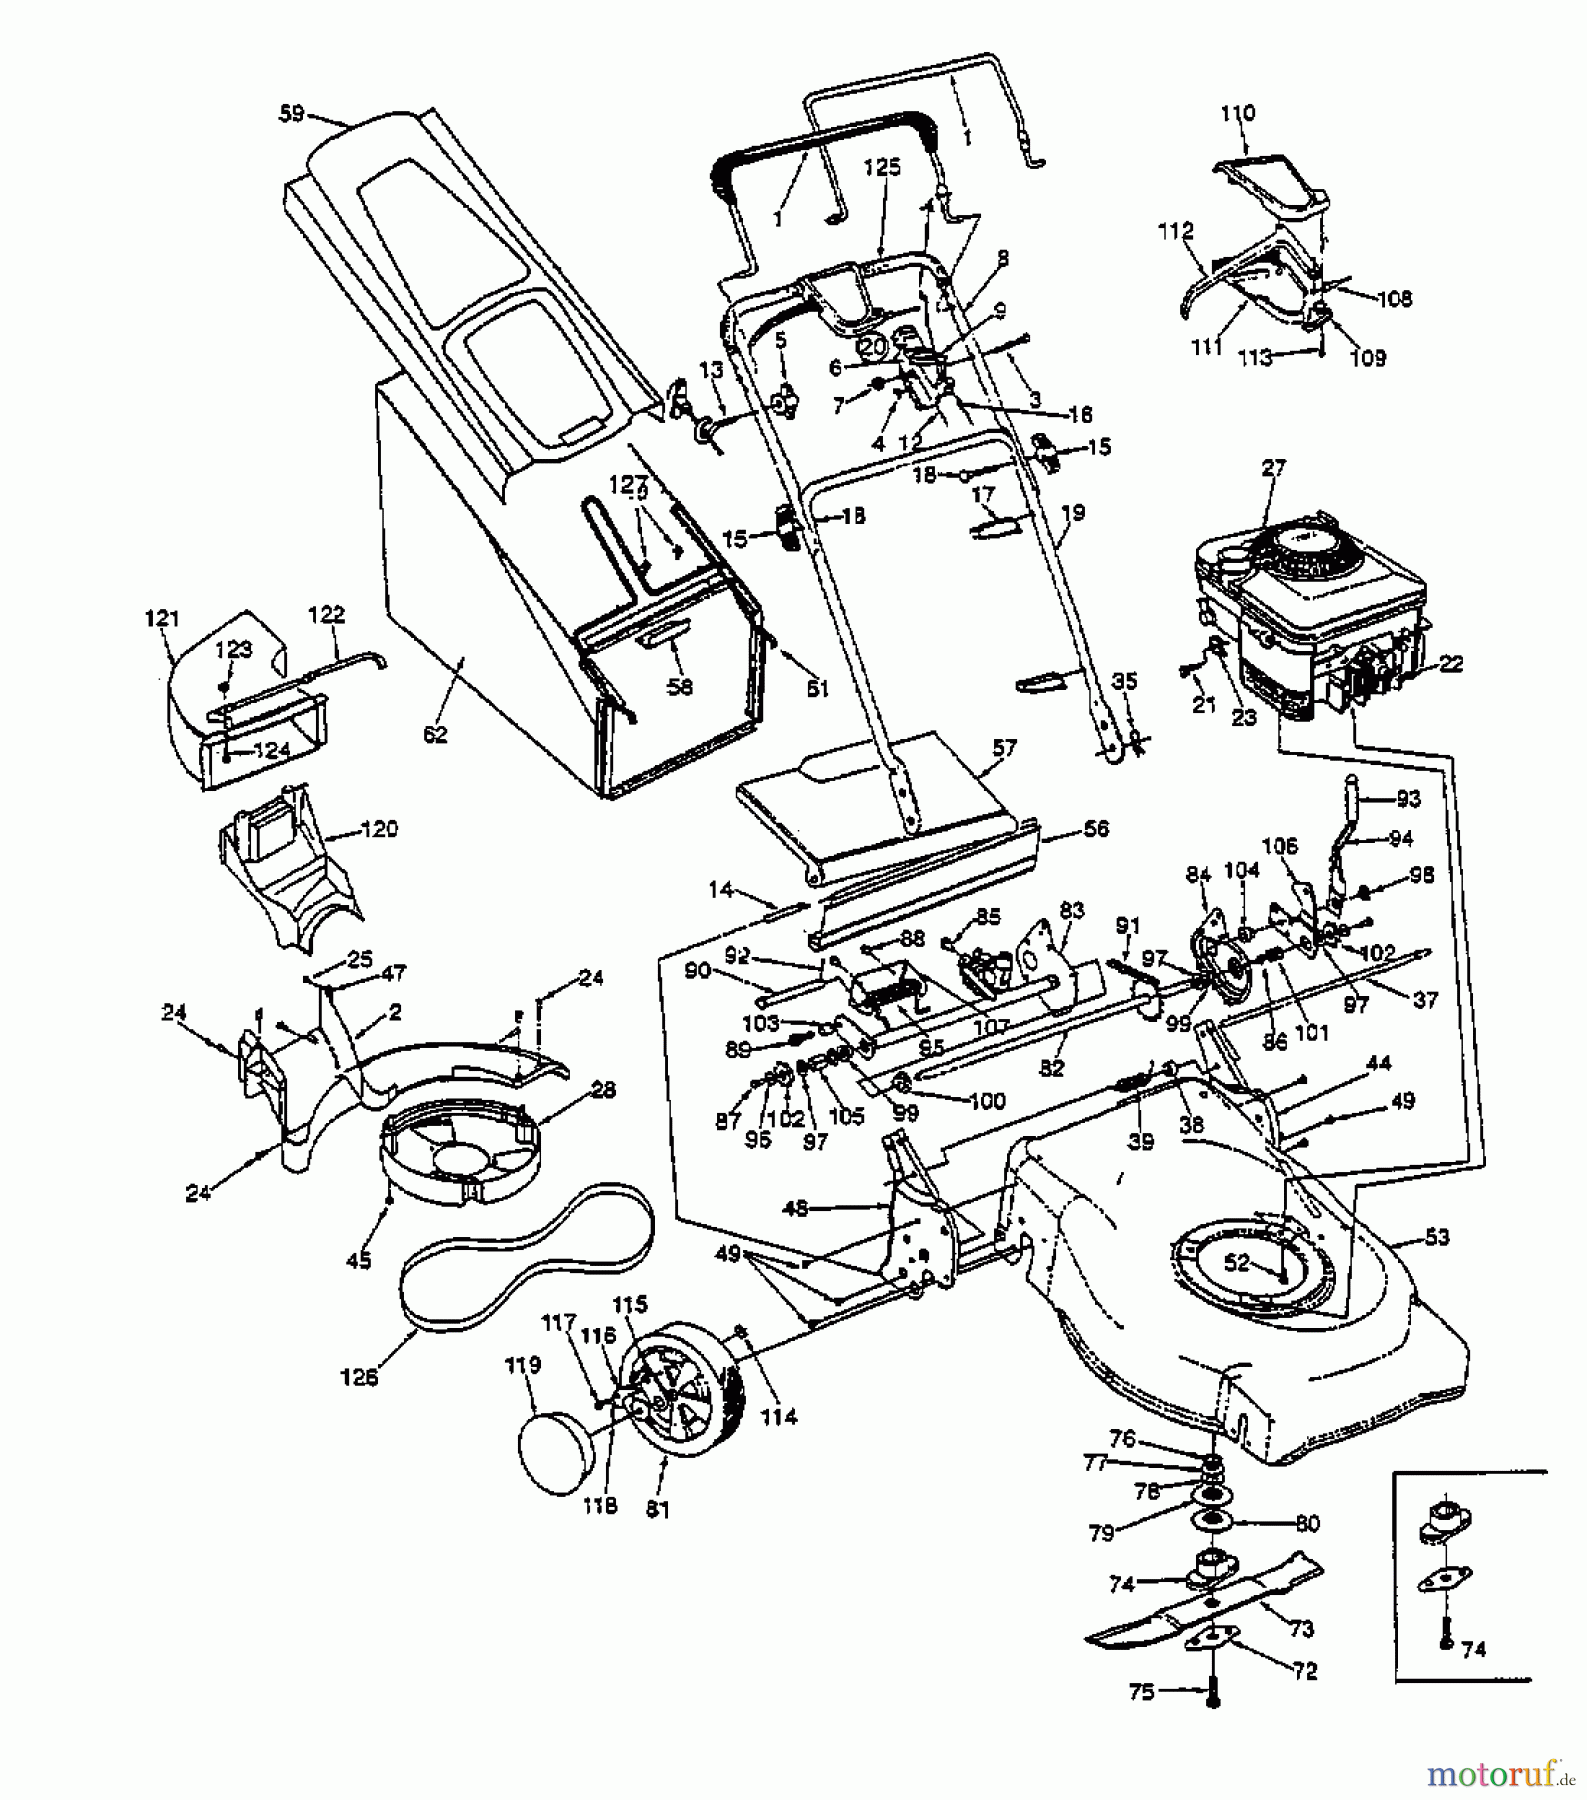  Lawnflite Petrol mower self propelled 478 SPE 12AE378O611  (1998) Basic machine